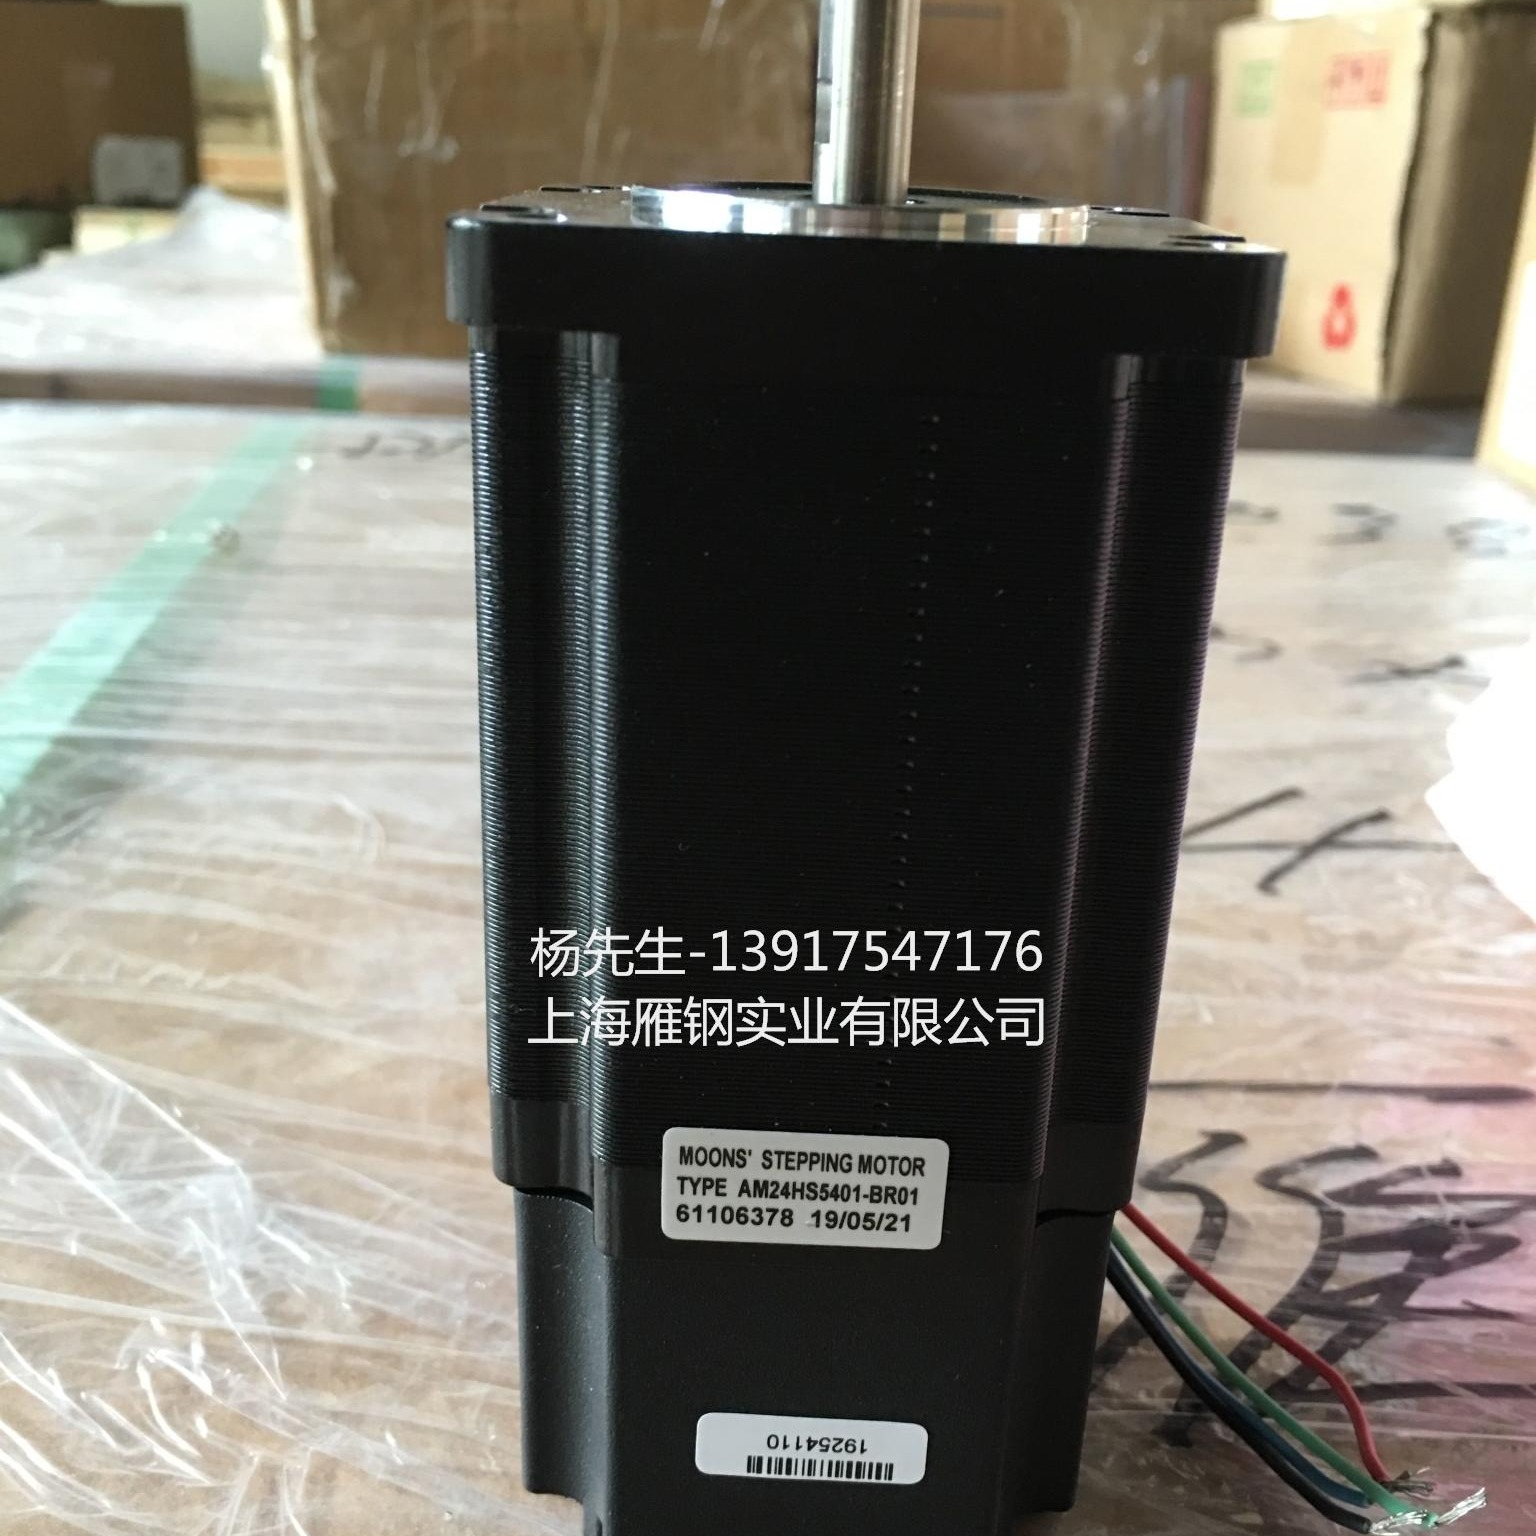 原装鸣志带制动器电机AM23HS2449-BR01上海鸣志代理商现货供应图片